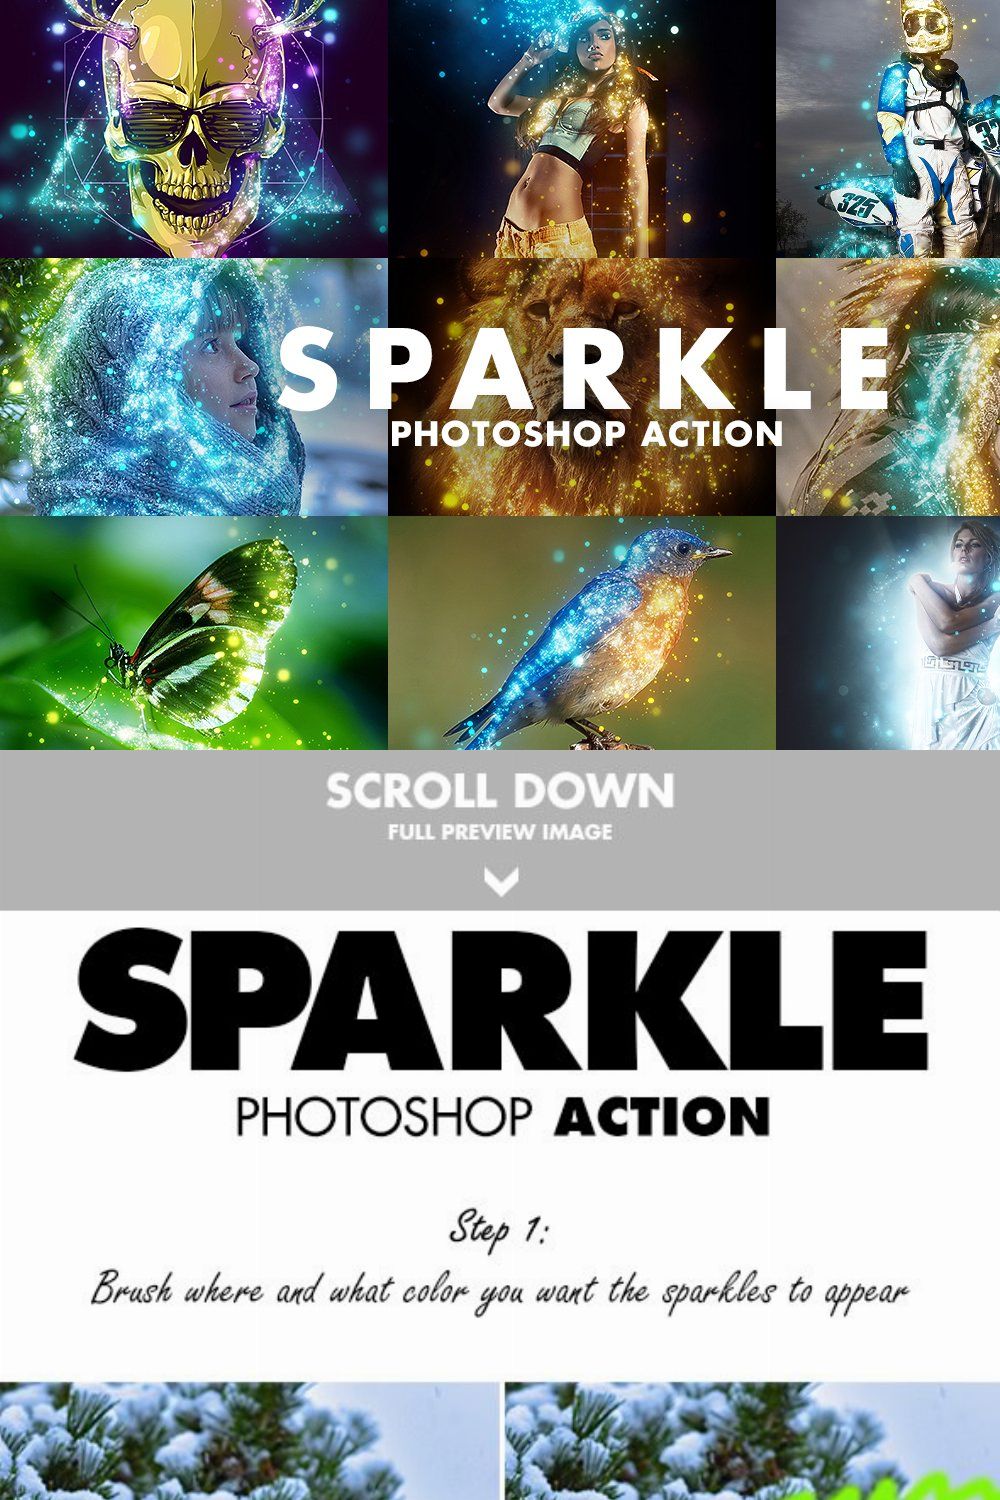 Sparkle Photoshop Action pinterest preview image.